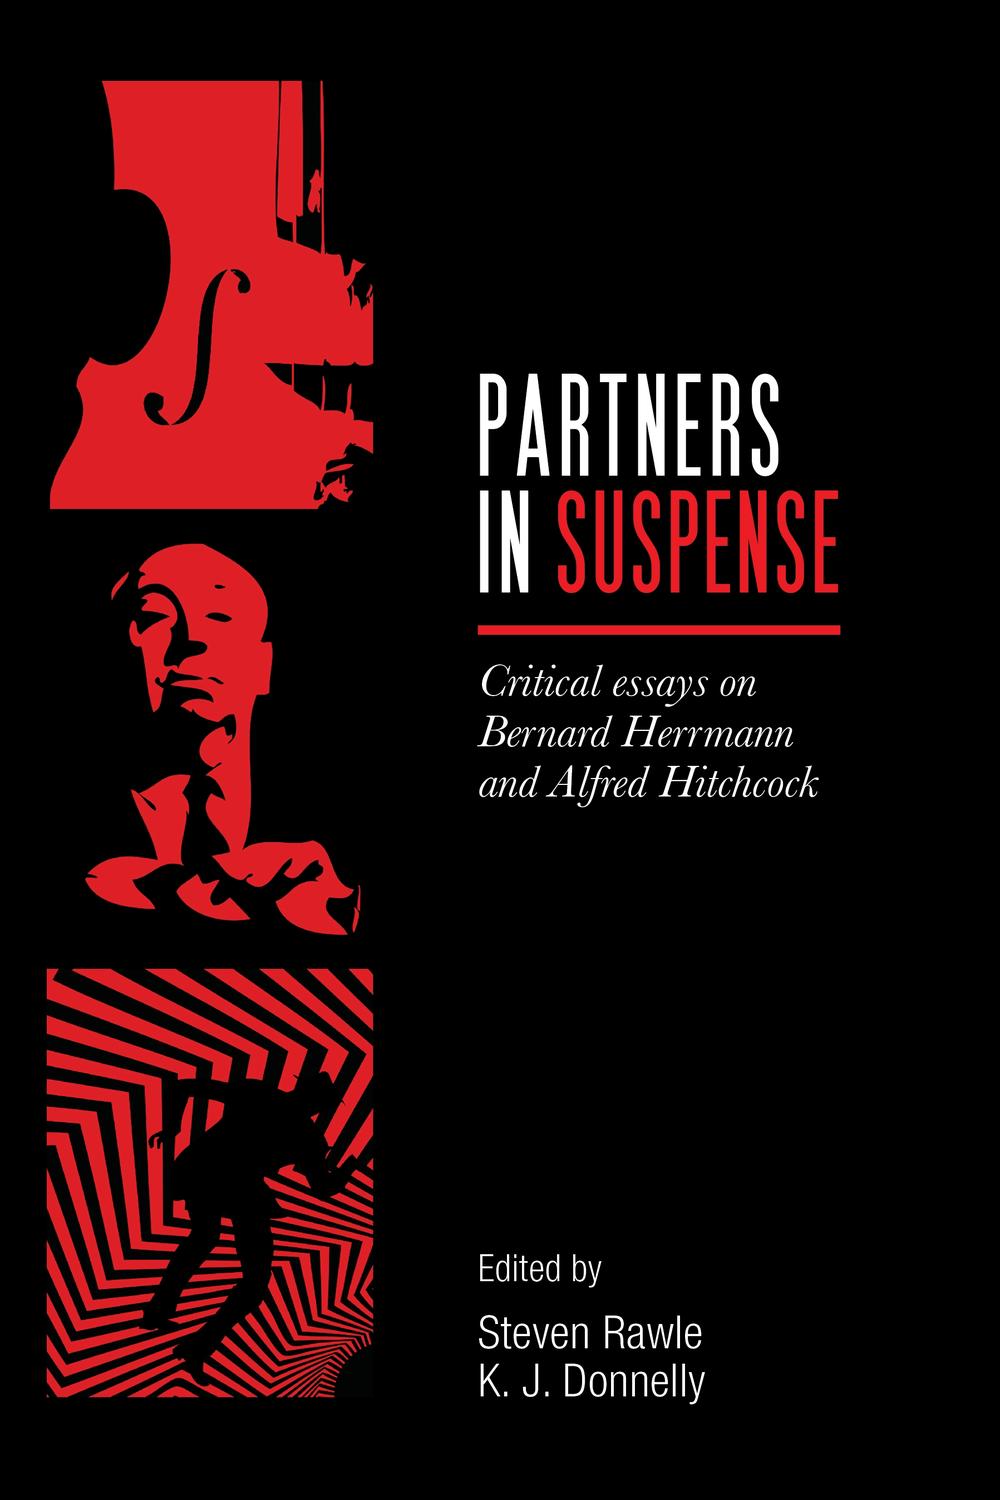 Partners in suspense - Steven Rawle, K.J. Donnelly